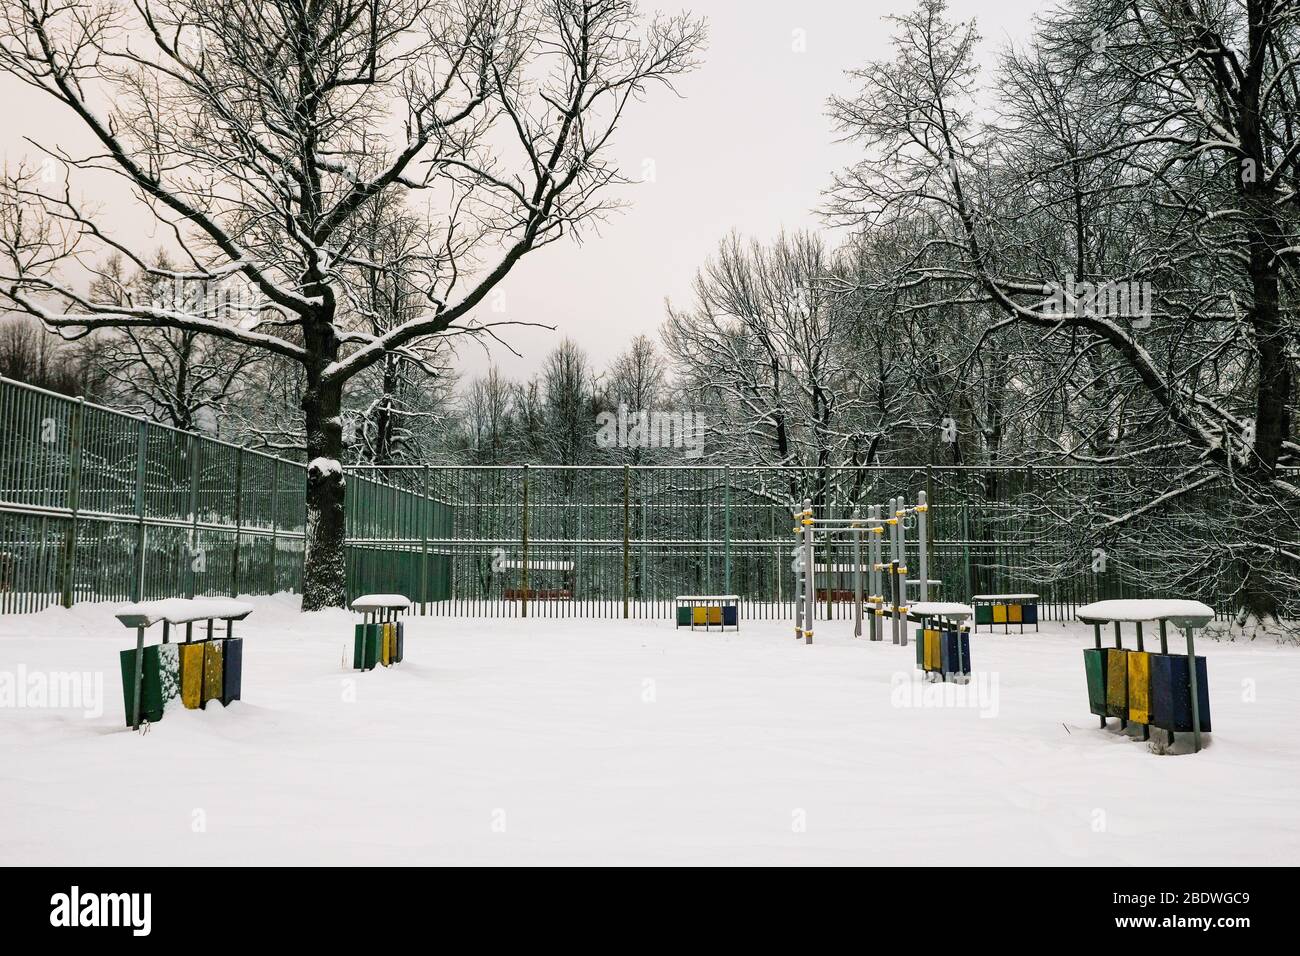 Terrain de sport dans le parc avec arbres en hiver avec neige. Moscou - Russie. Banque D'Images